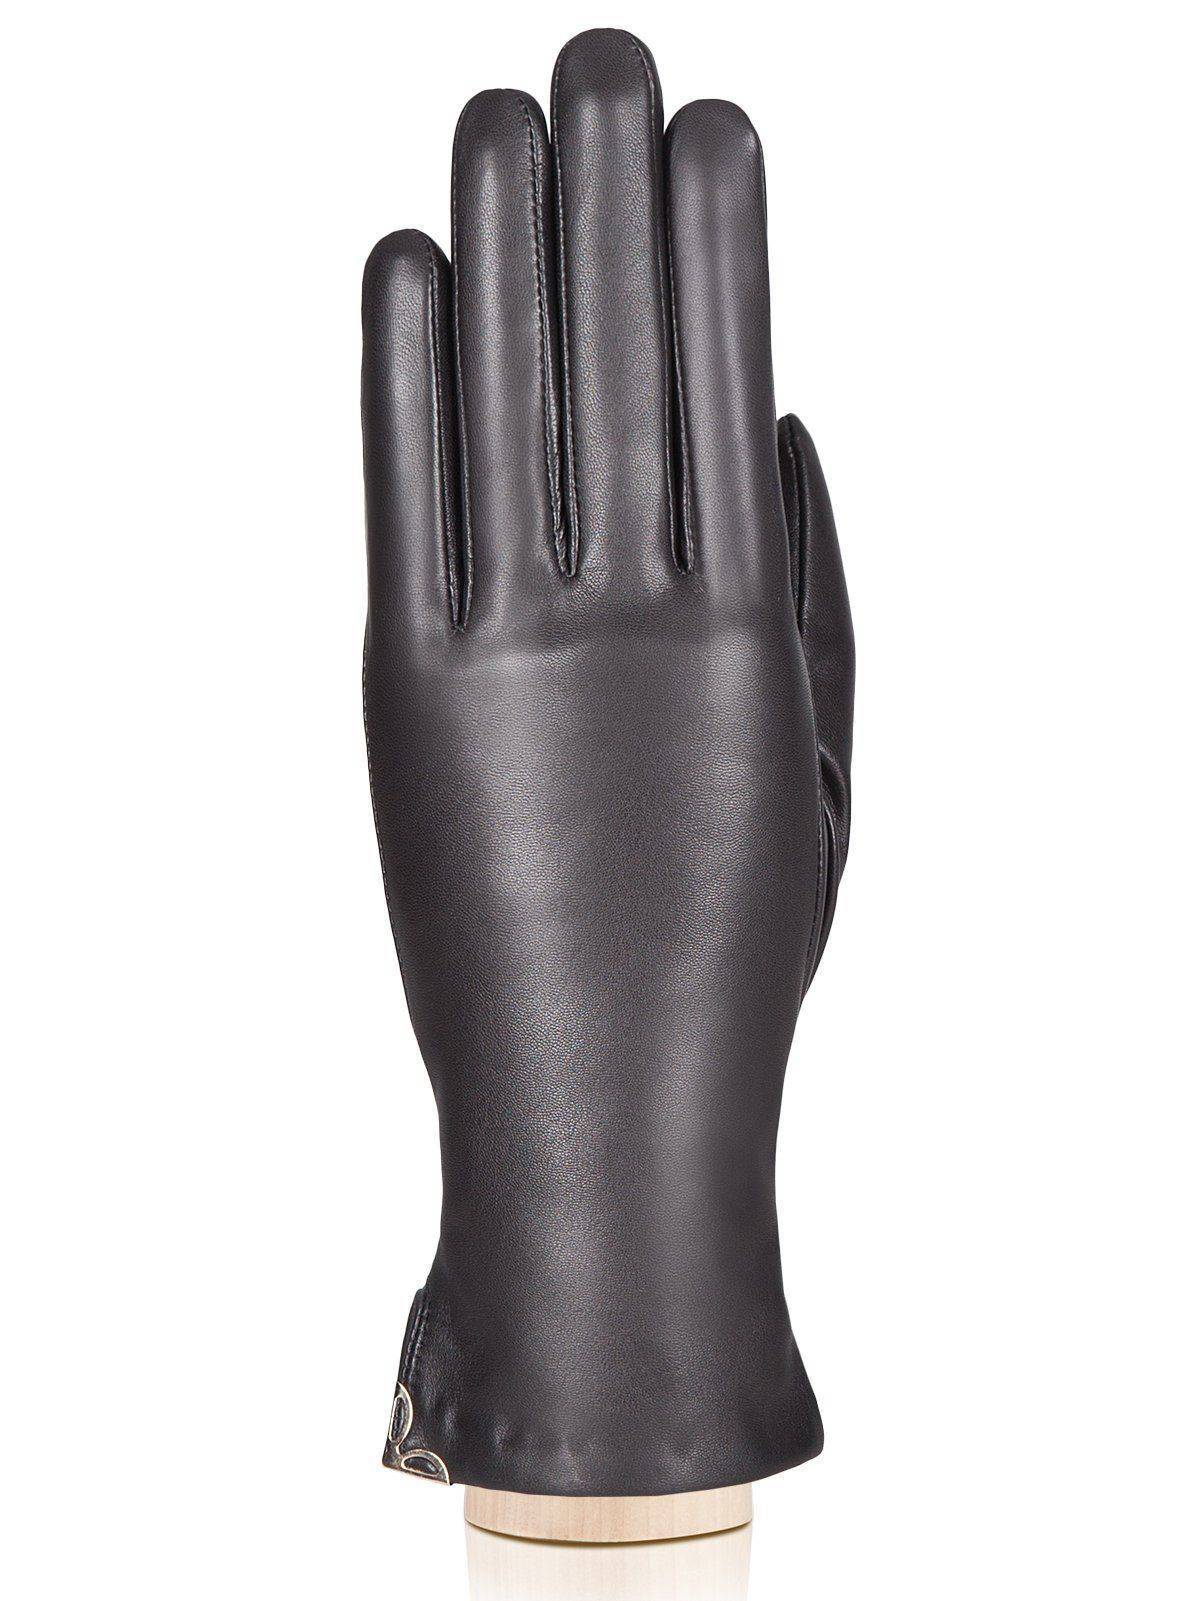 Мужские перчатки ELEGANZZA, черные